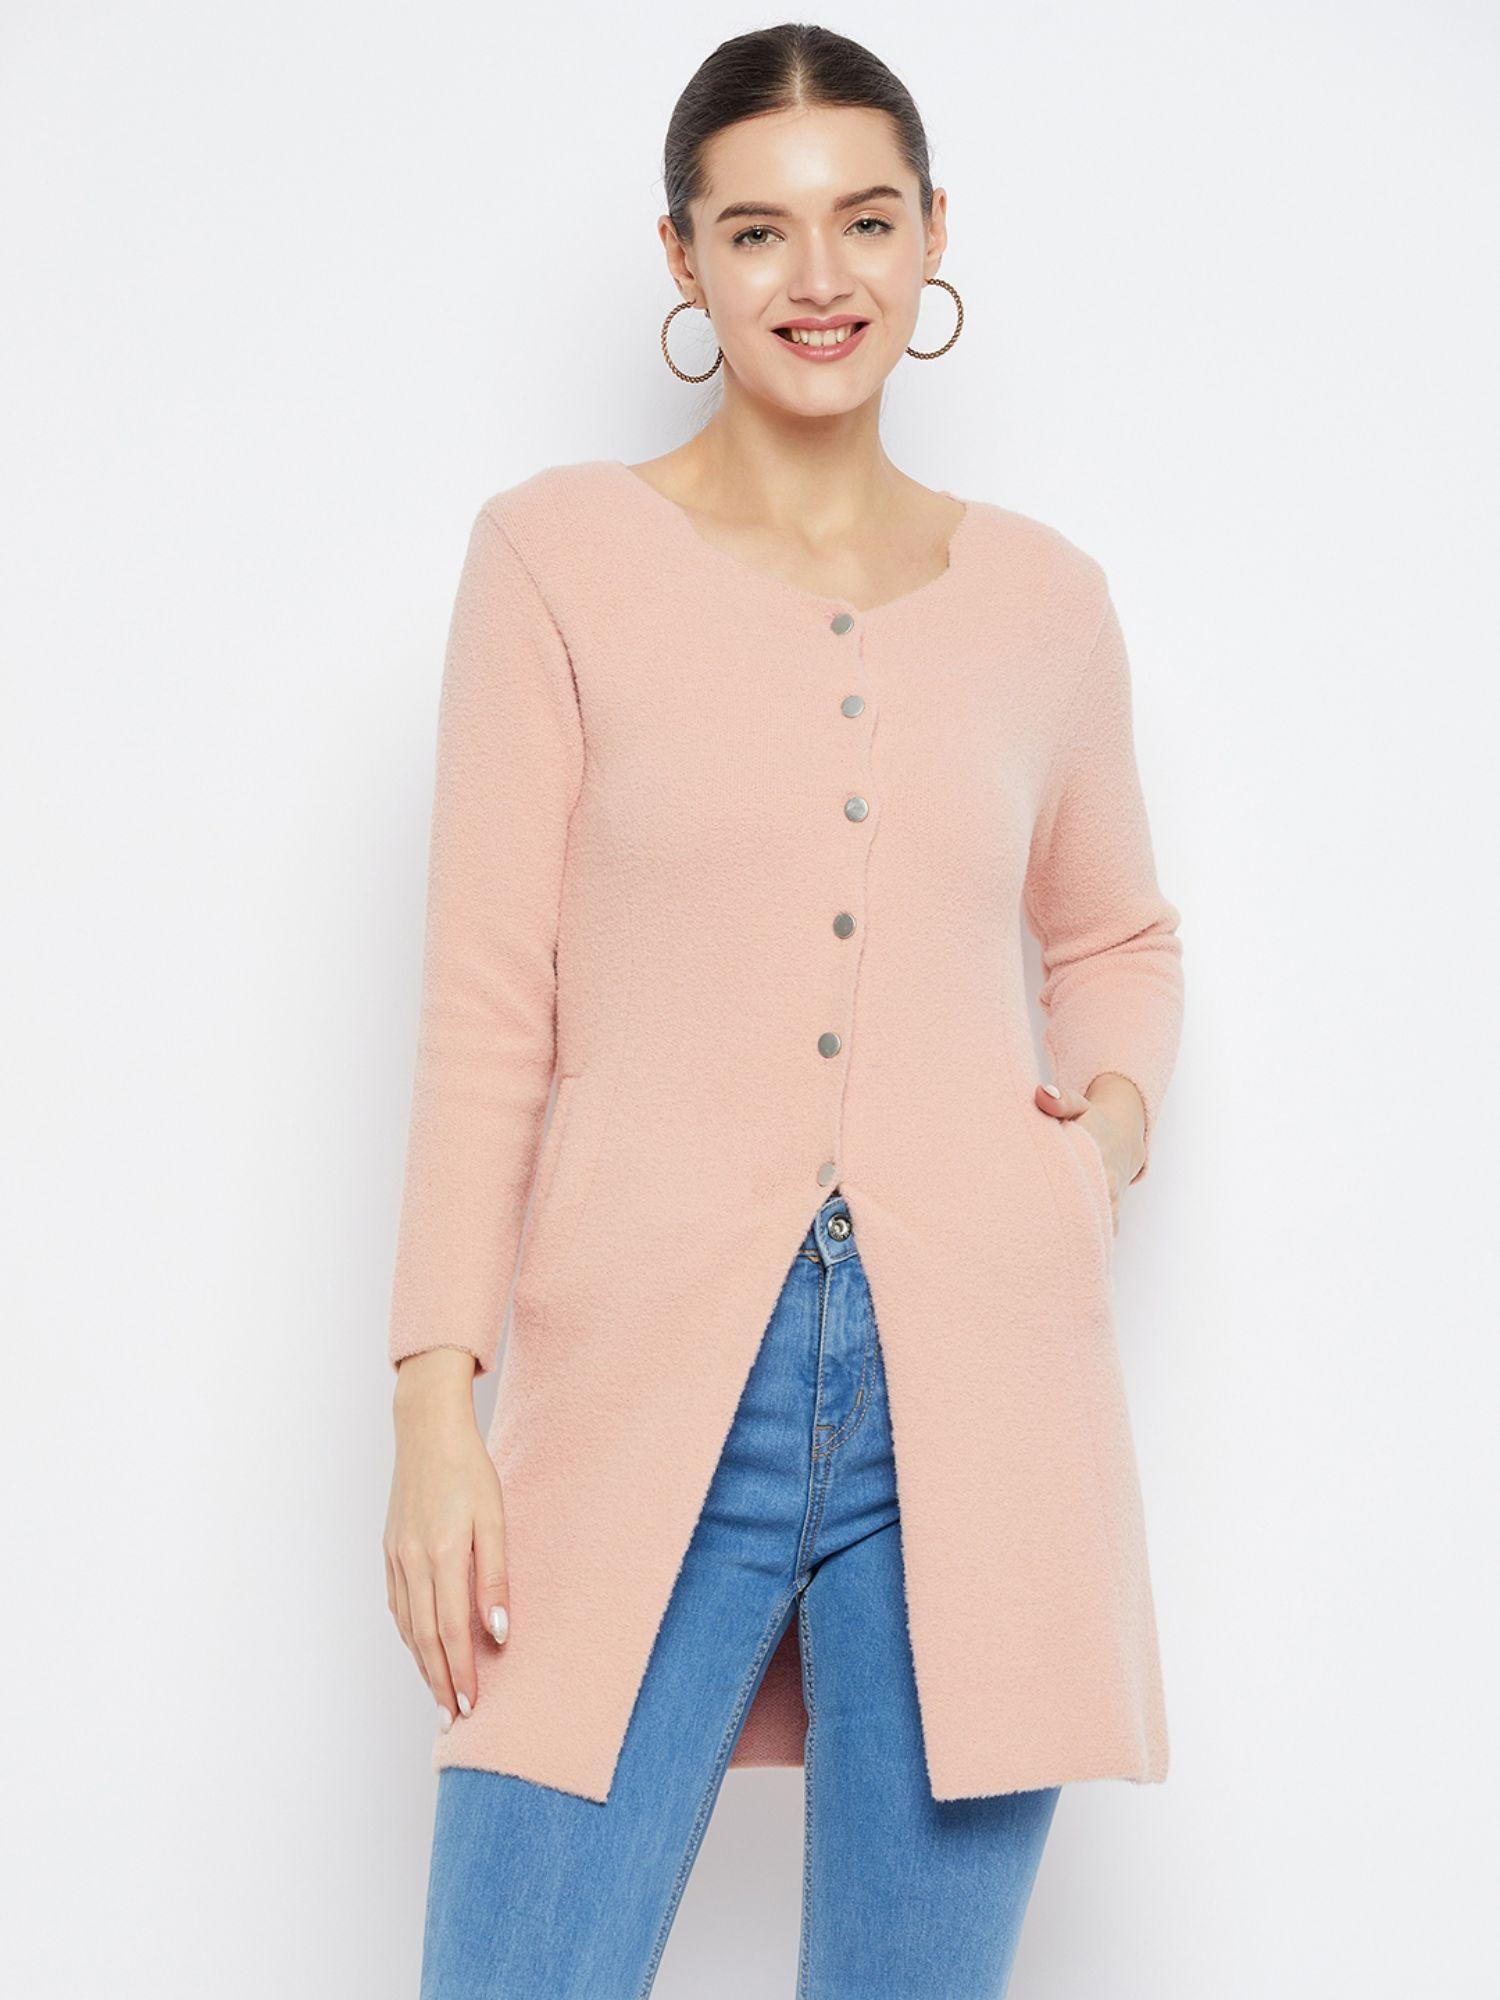 Women Winterwear Solid Peach Long Line Woollen Cardigan